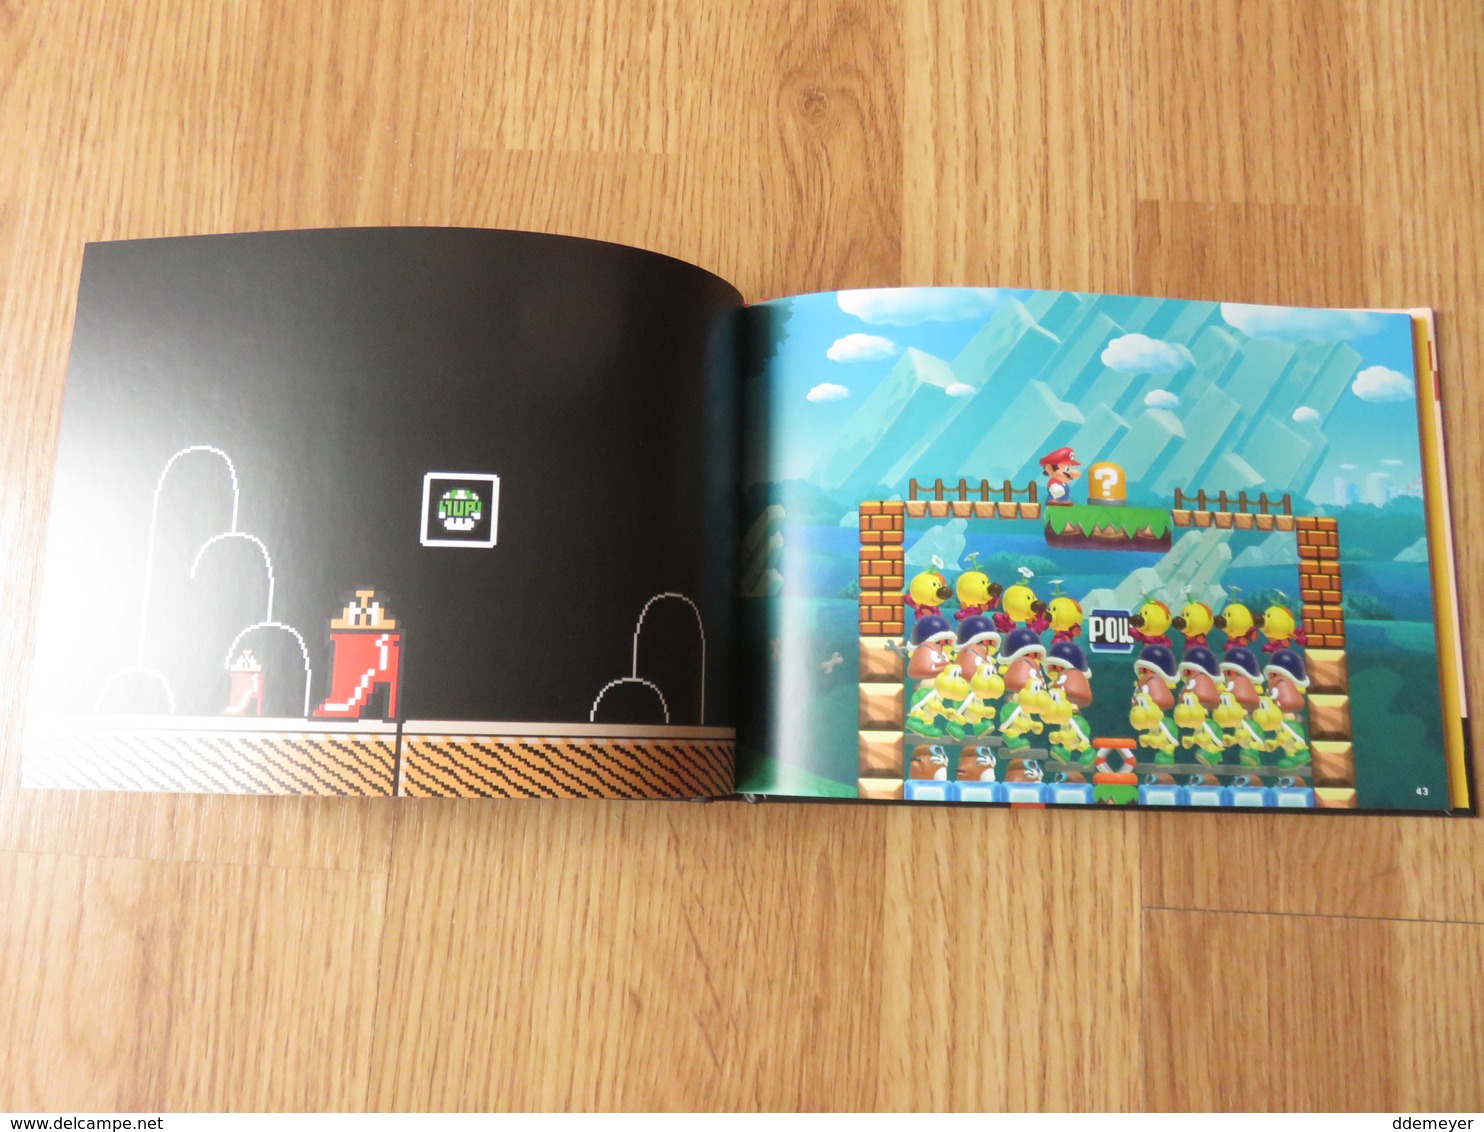 Super Mario Maker Takashi Tezuka Shigeru Miyamoto 96blz 2015 Nintendo - Culture